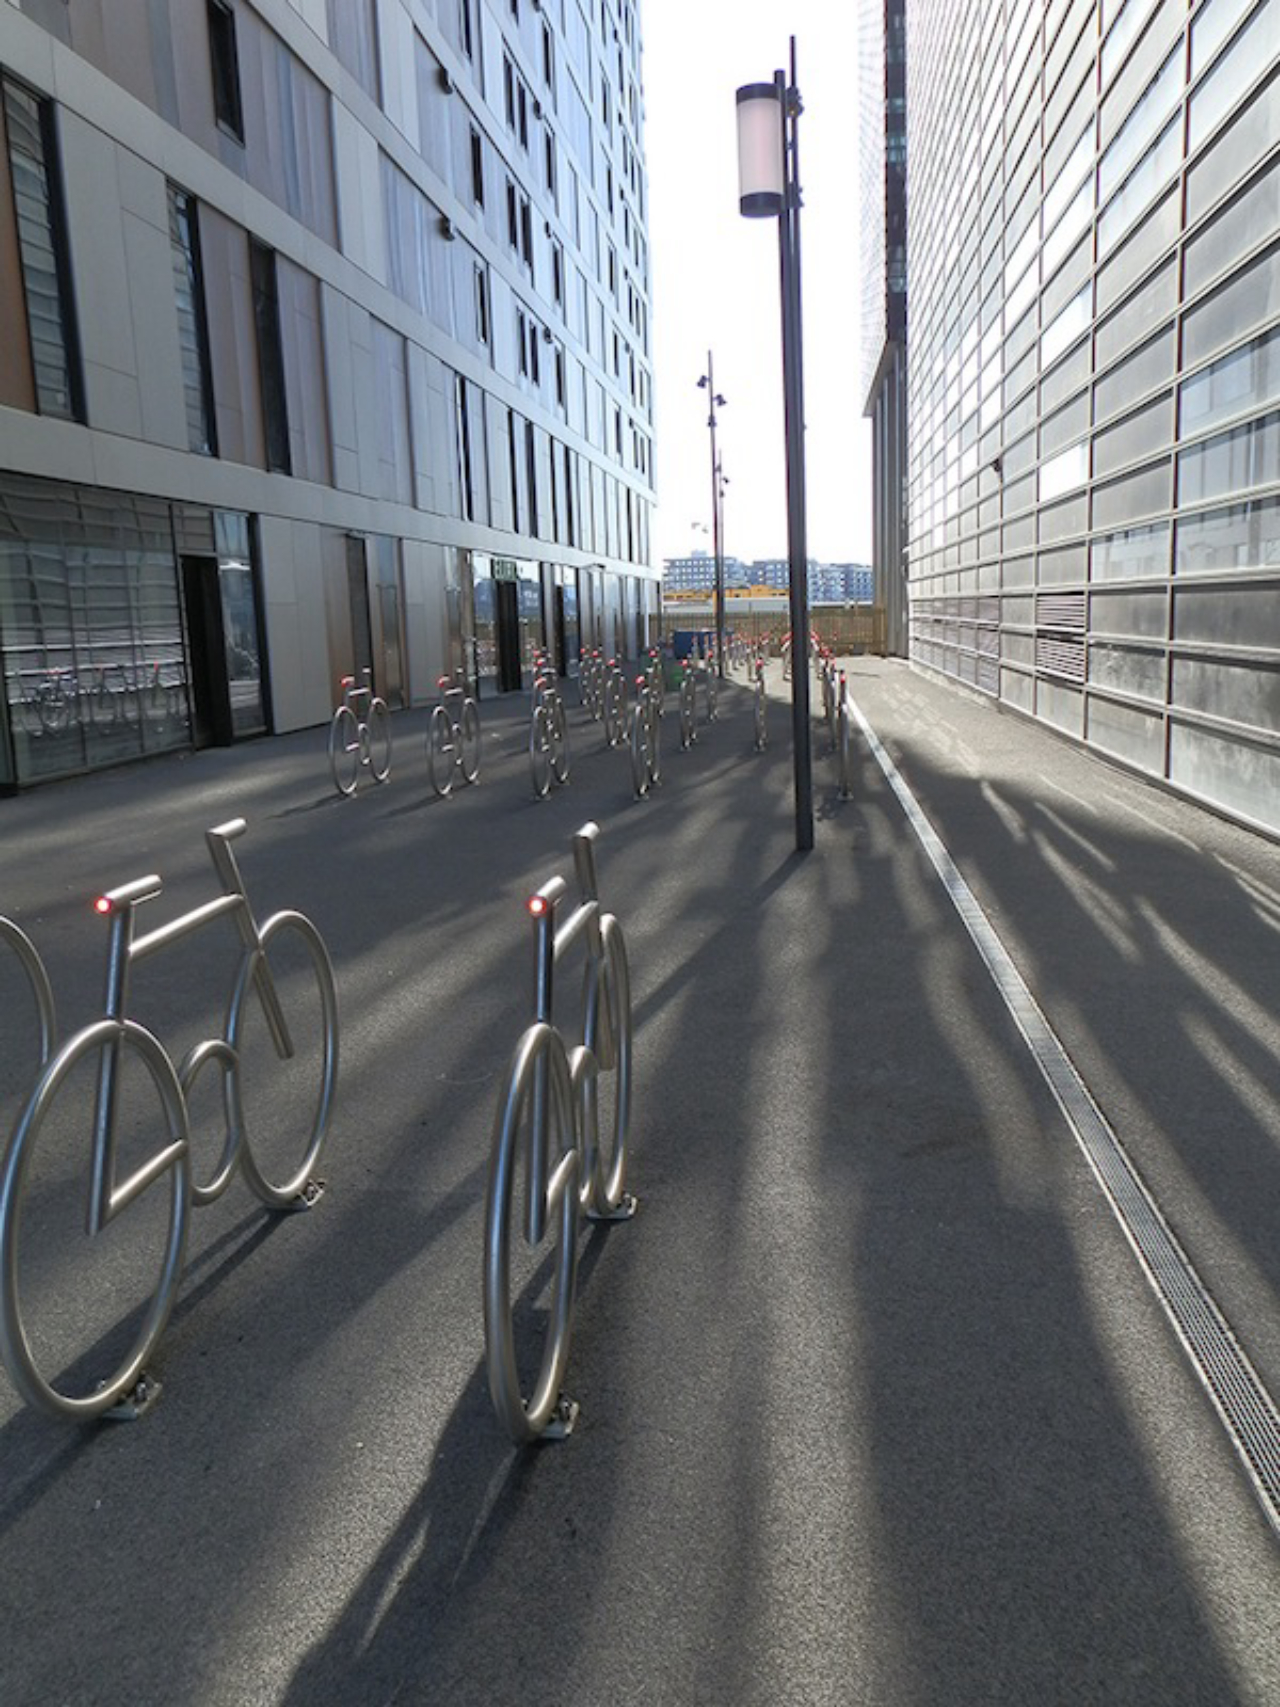 Bicicletário em Olso, Noruega: criar um pelotão foi a solução para acomodar 200 bikes.